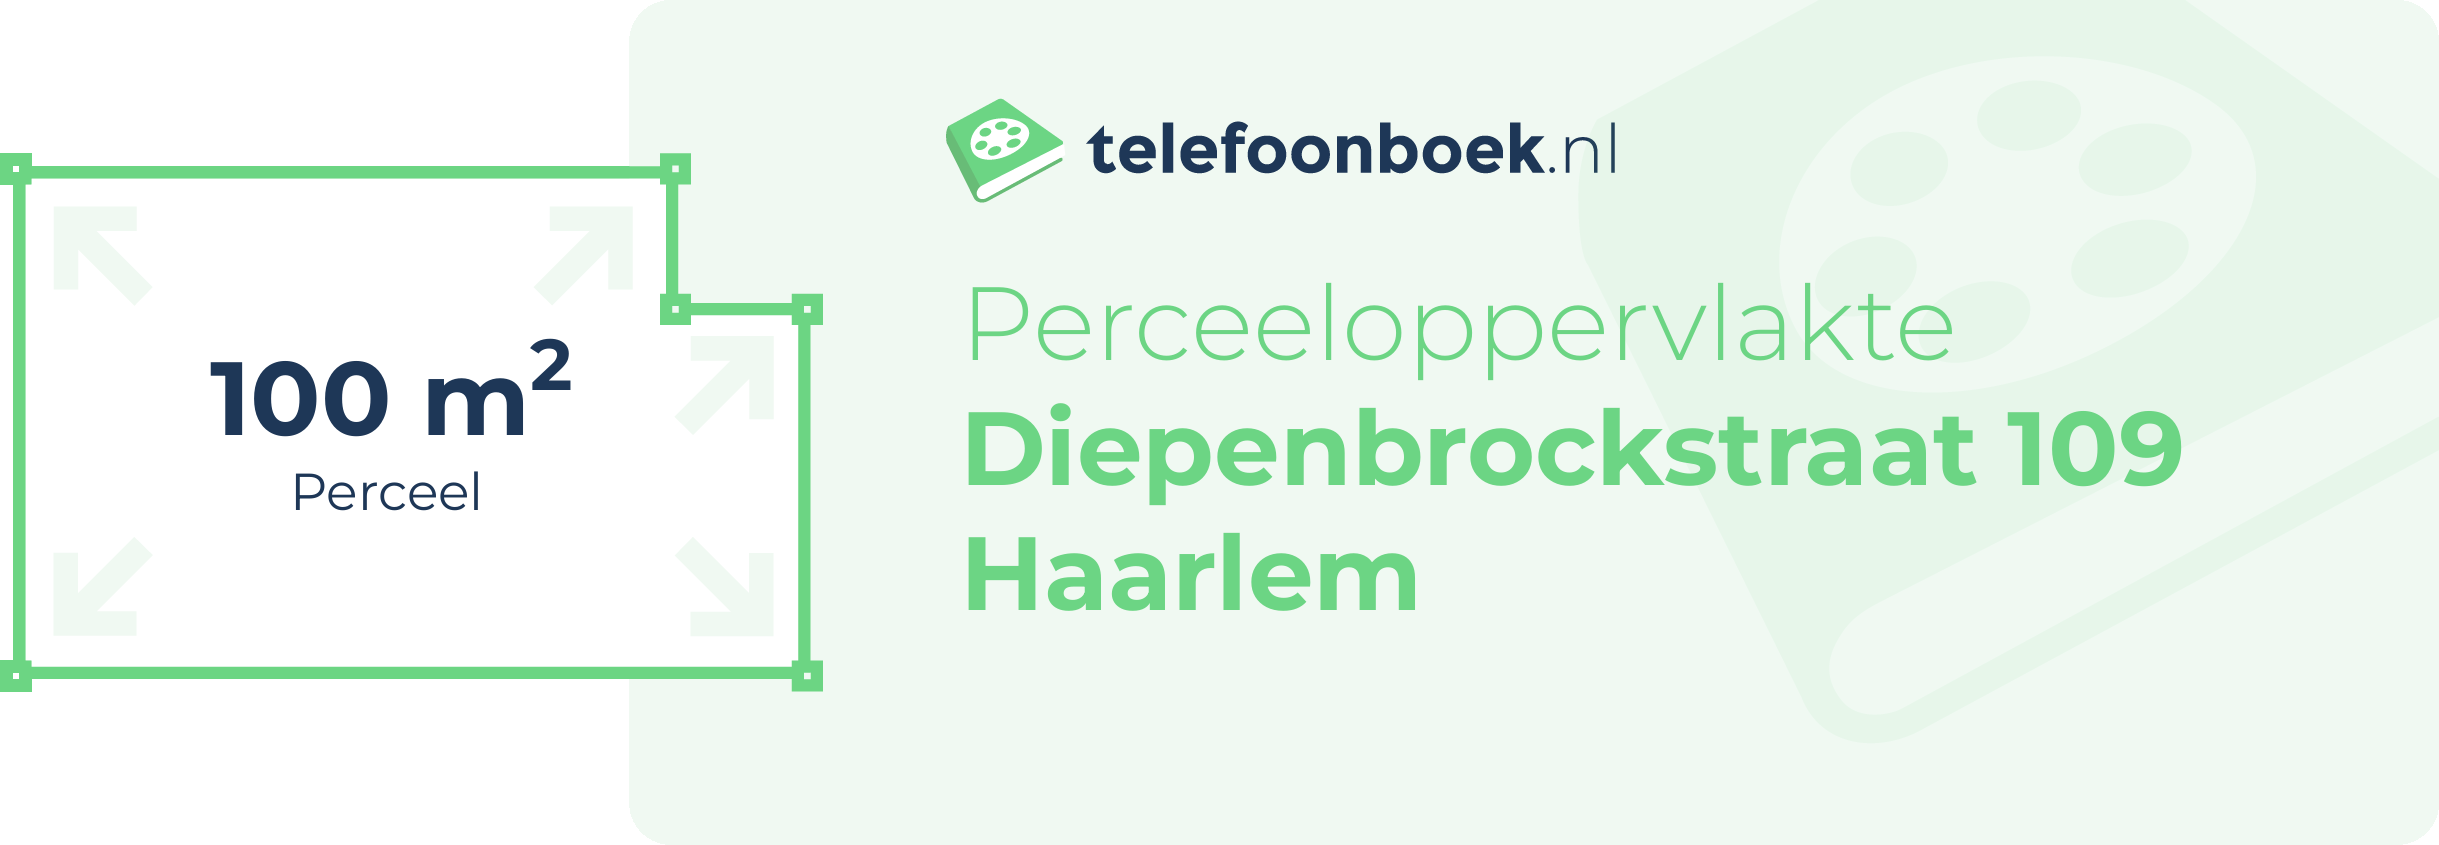 Perceeloppervlakte Diepenbrockstraat 109 Haarlem